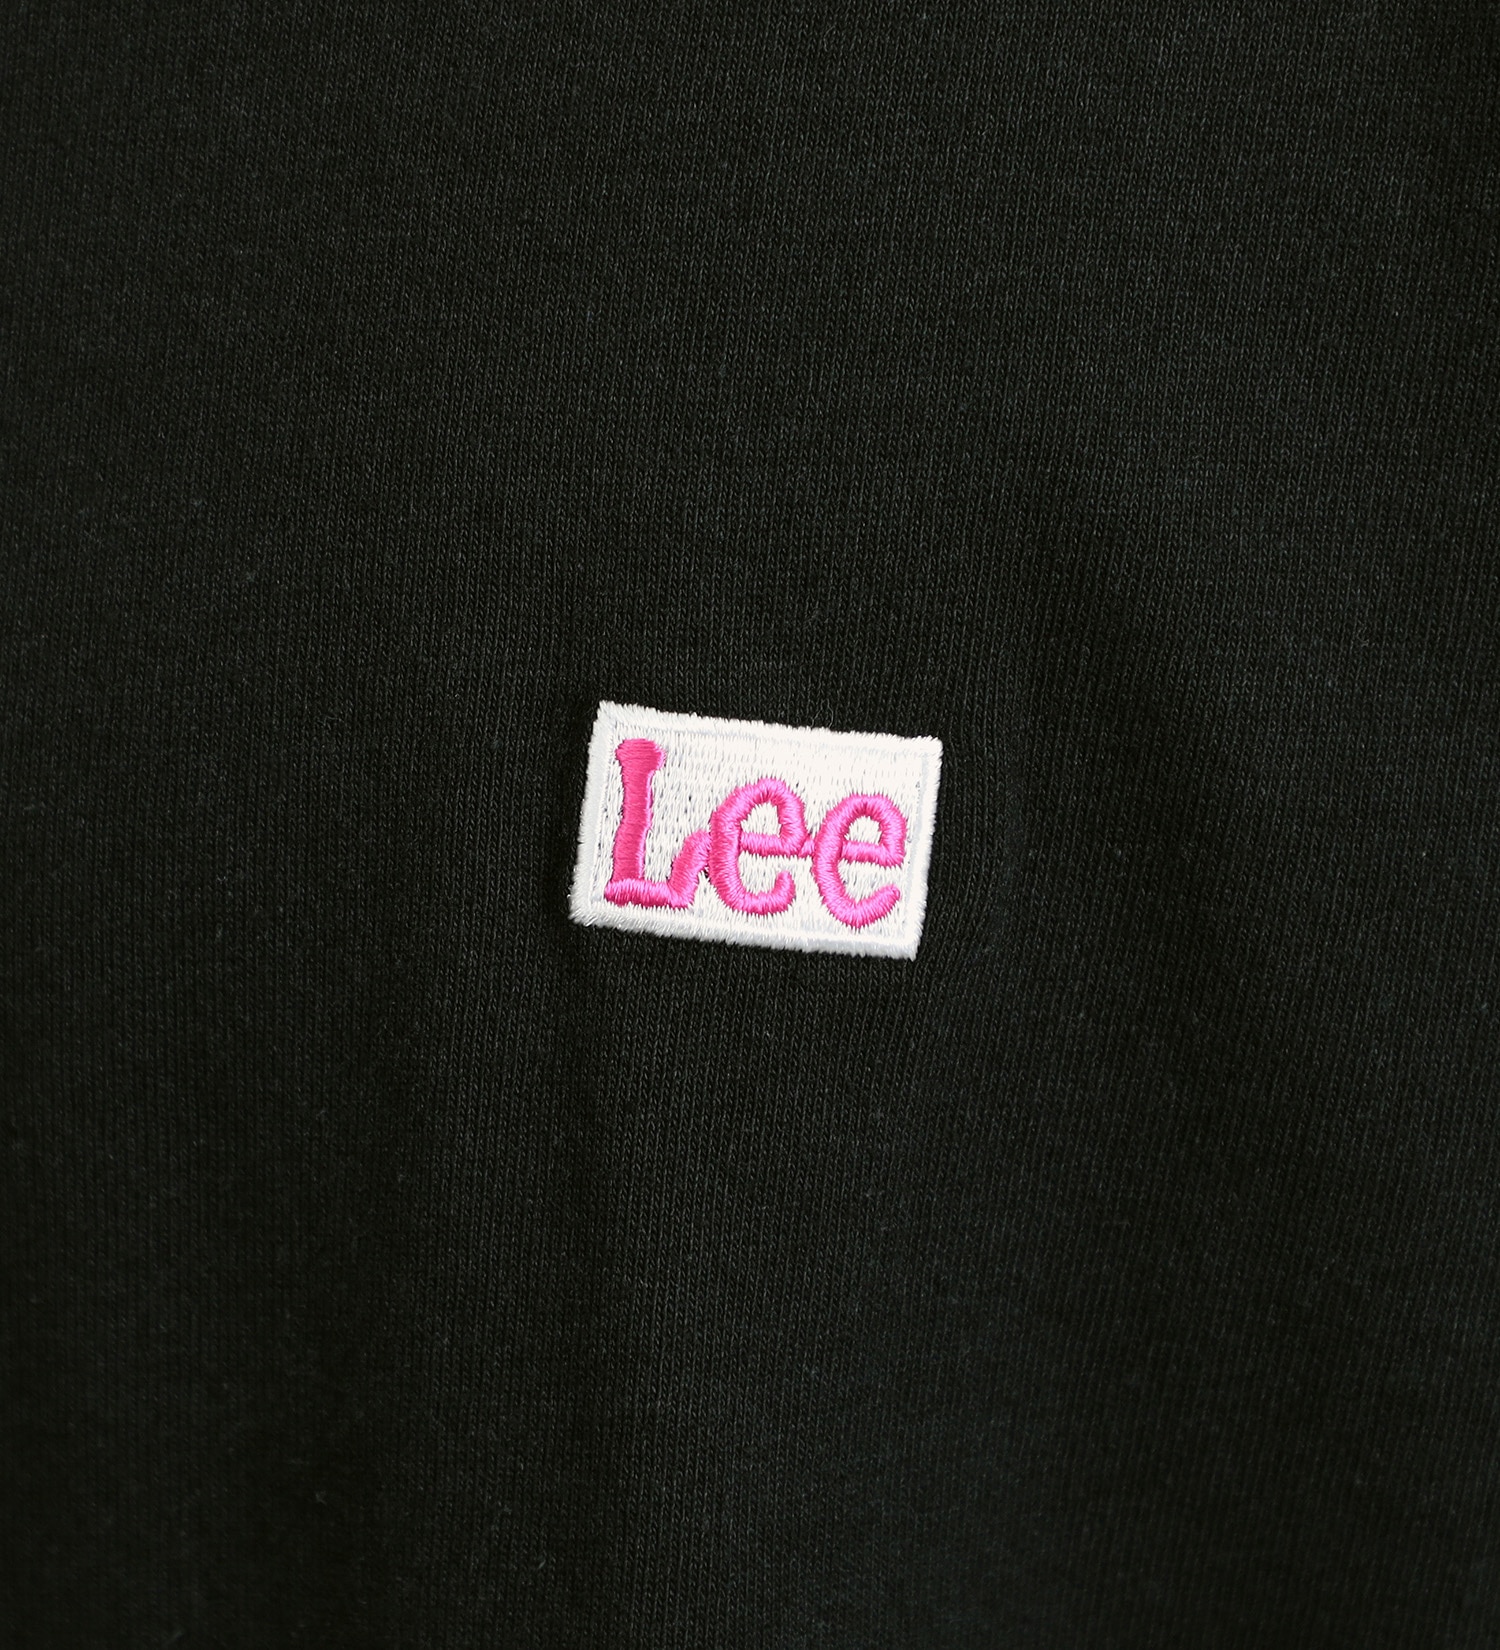 Lee(リー)の【GW SALE】Lee バックプリント ショートスリーブTee|トップス/Tシャツ/カットソー/メンズ|ブラック